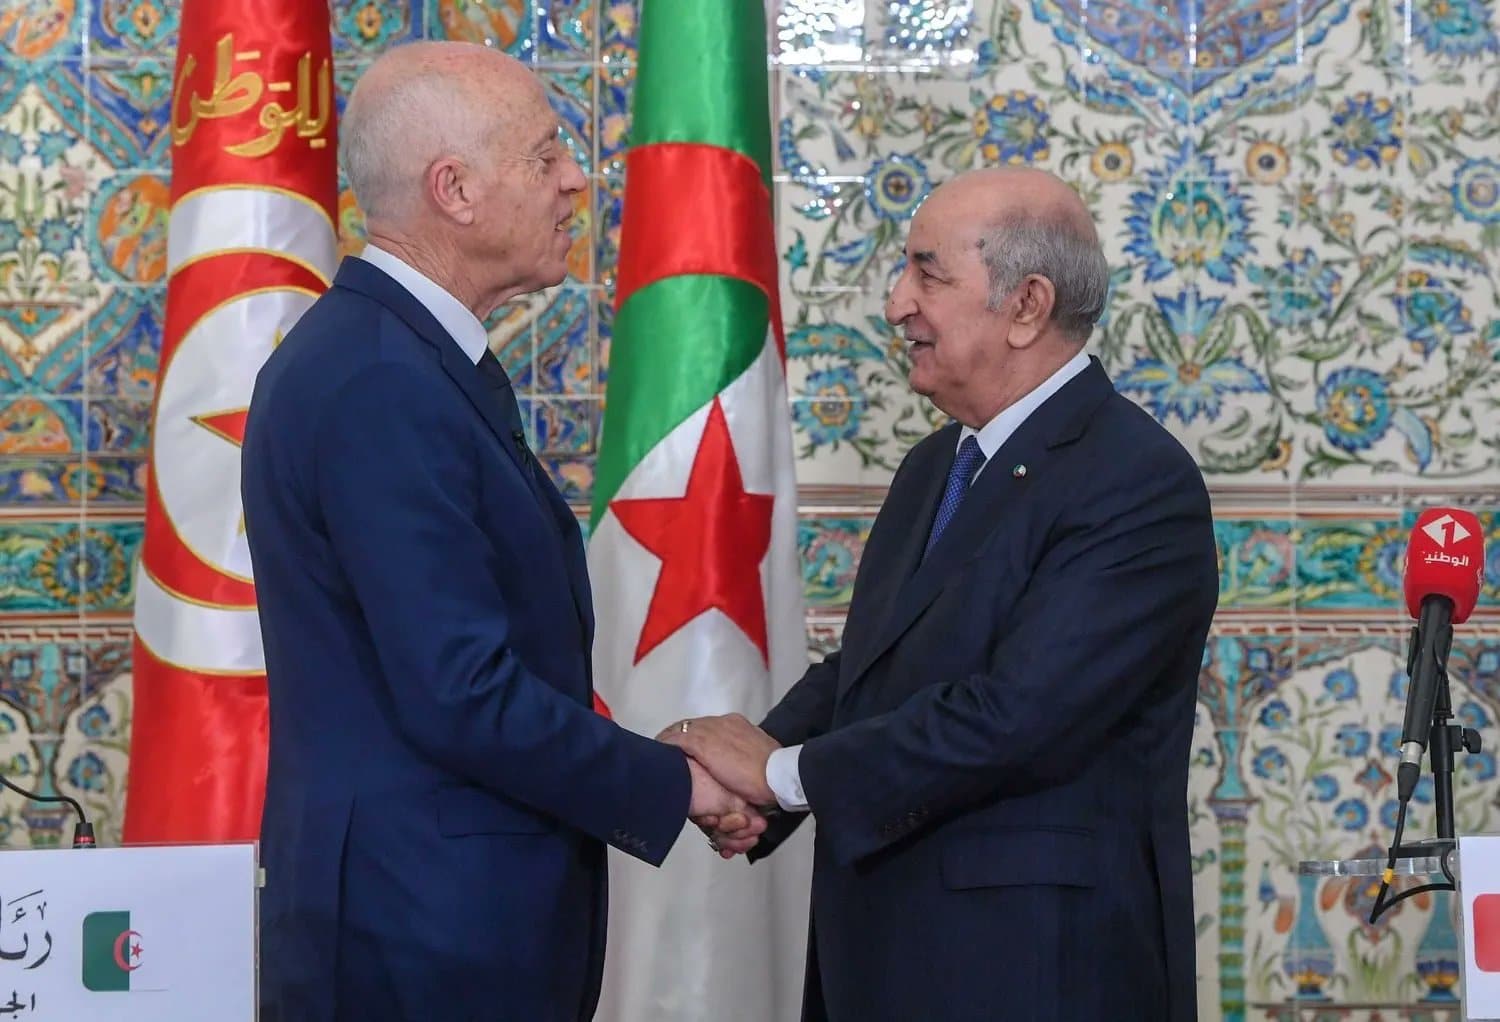 تقرير بموقع “إنسايد أرابيا” يؤكد ان الجزائر تخشى من تحول تونس إلى الإمارة الـ8 للإمارات watanserb.com